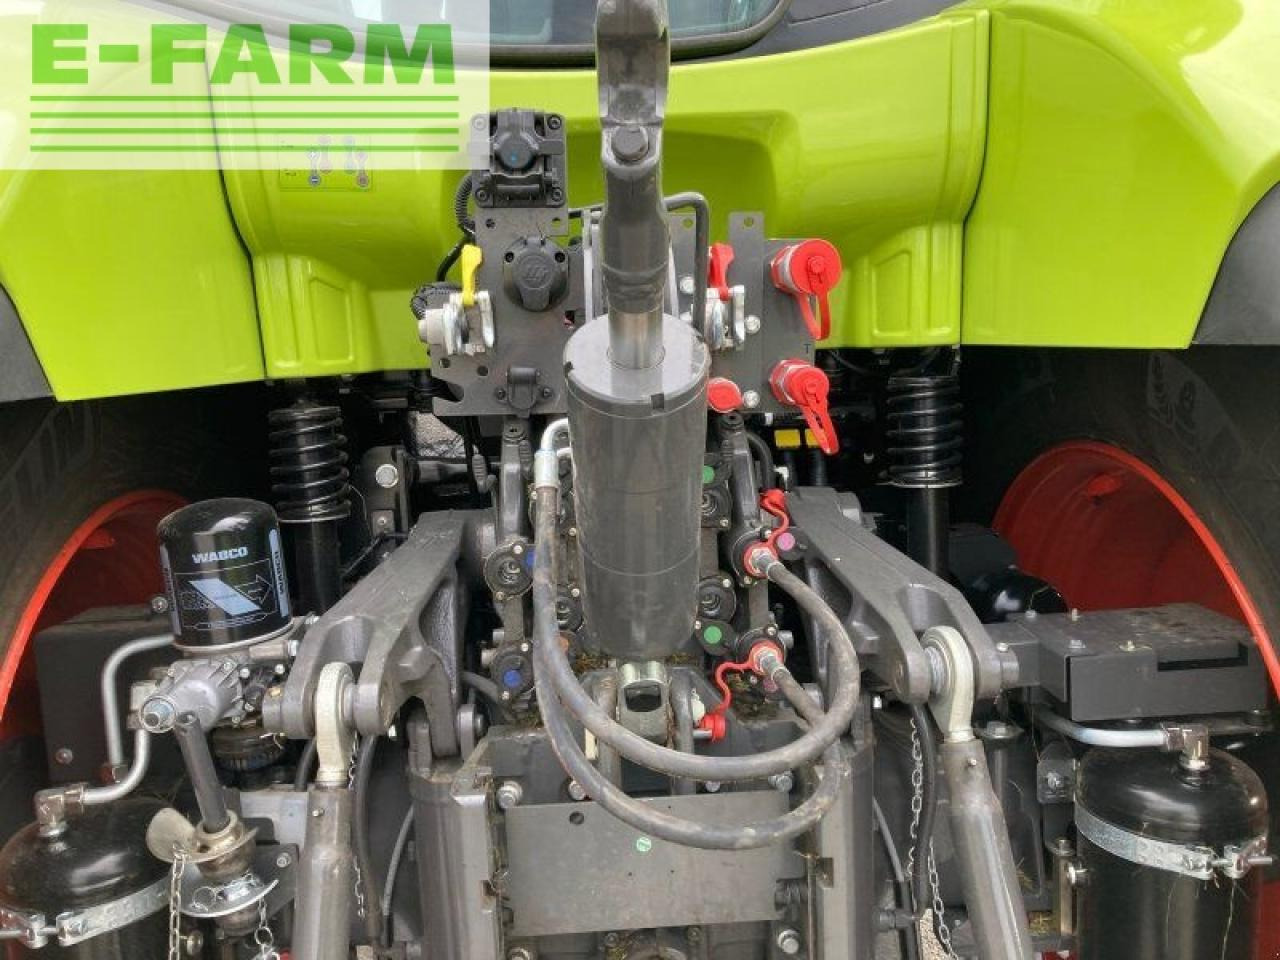 Traktor CLAAS arion 550 cmatic